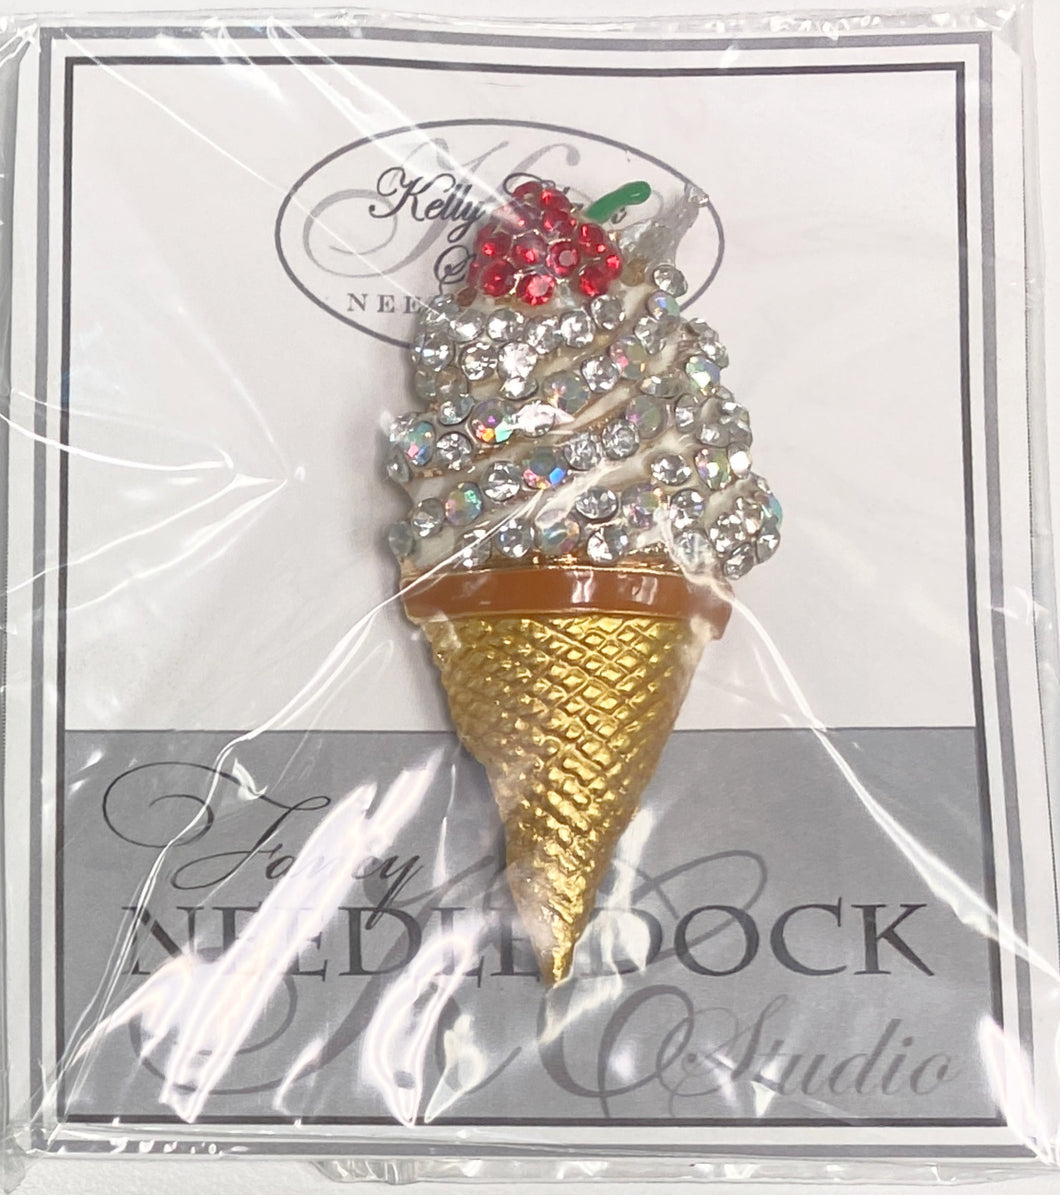 ice cream cone needle dock